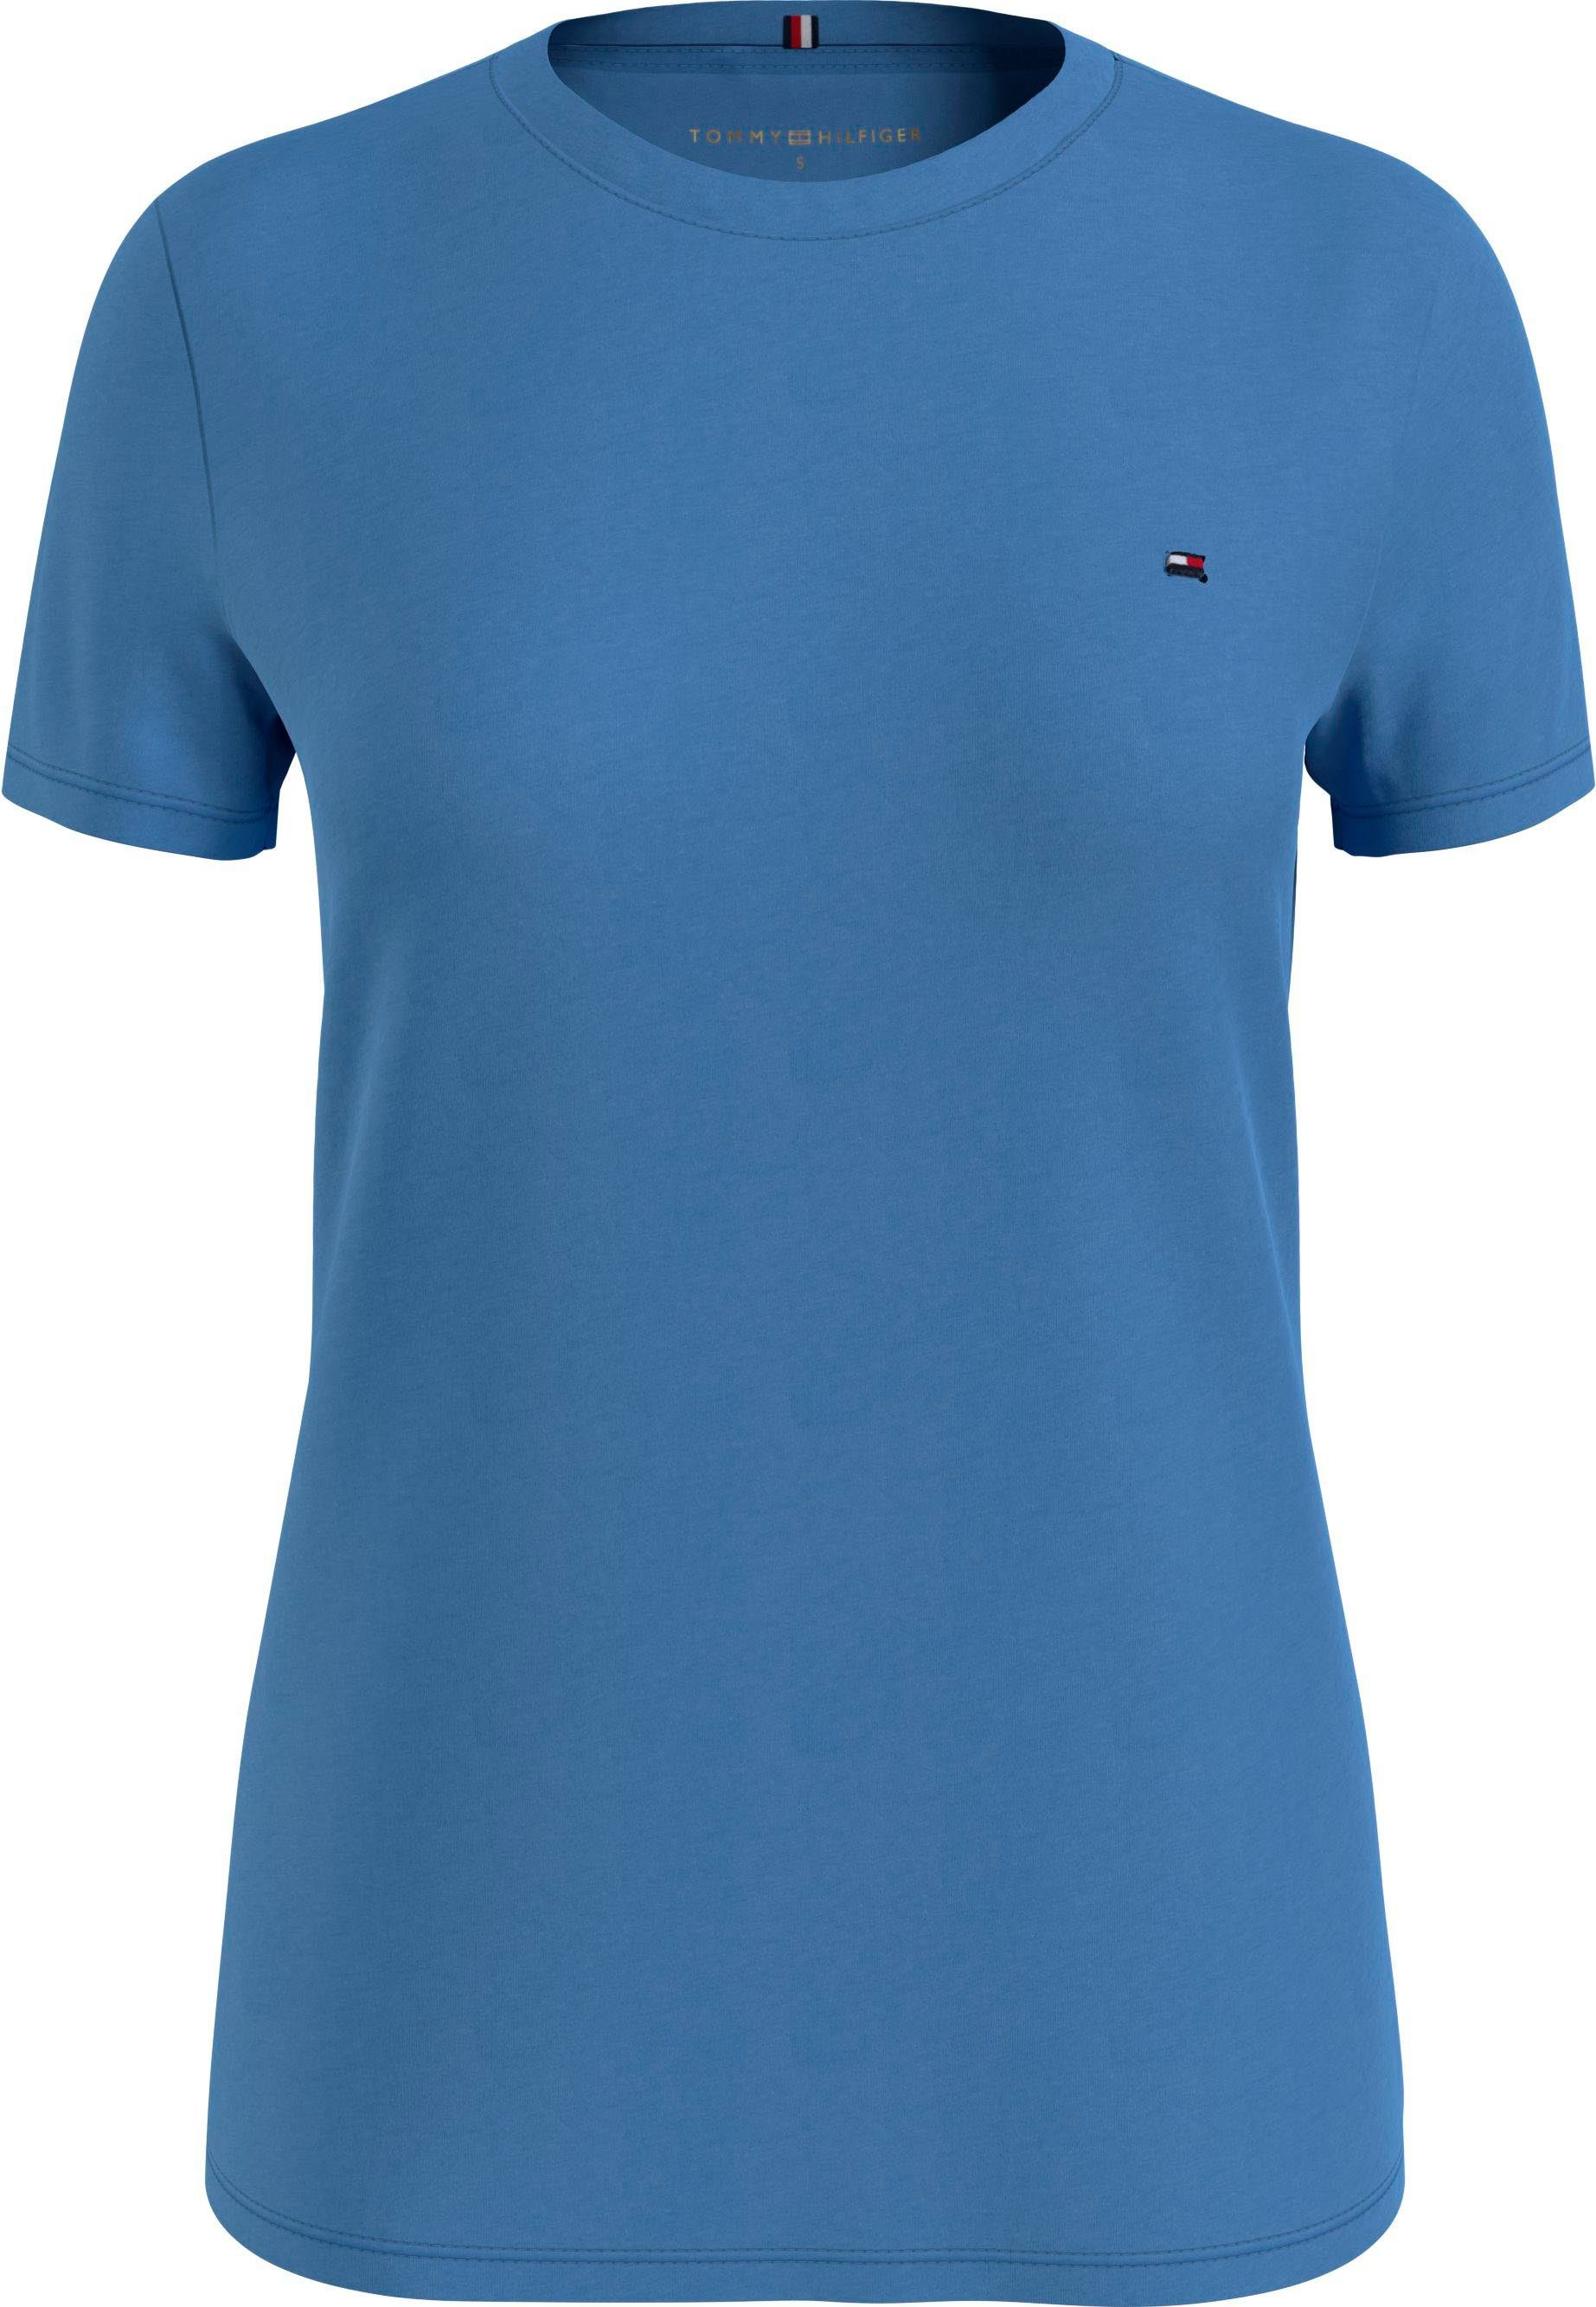 preisgünstig Markenlabel Hilfiger NEW NECK TEE Sky-Cloud Tommy Tommy CREW T-Shirt mit Hilfiger